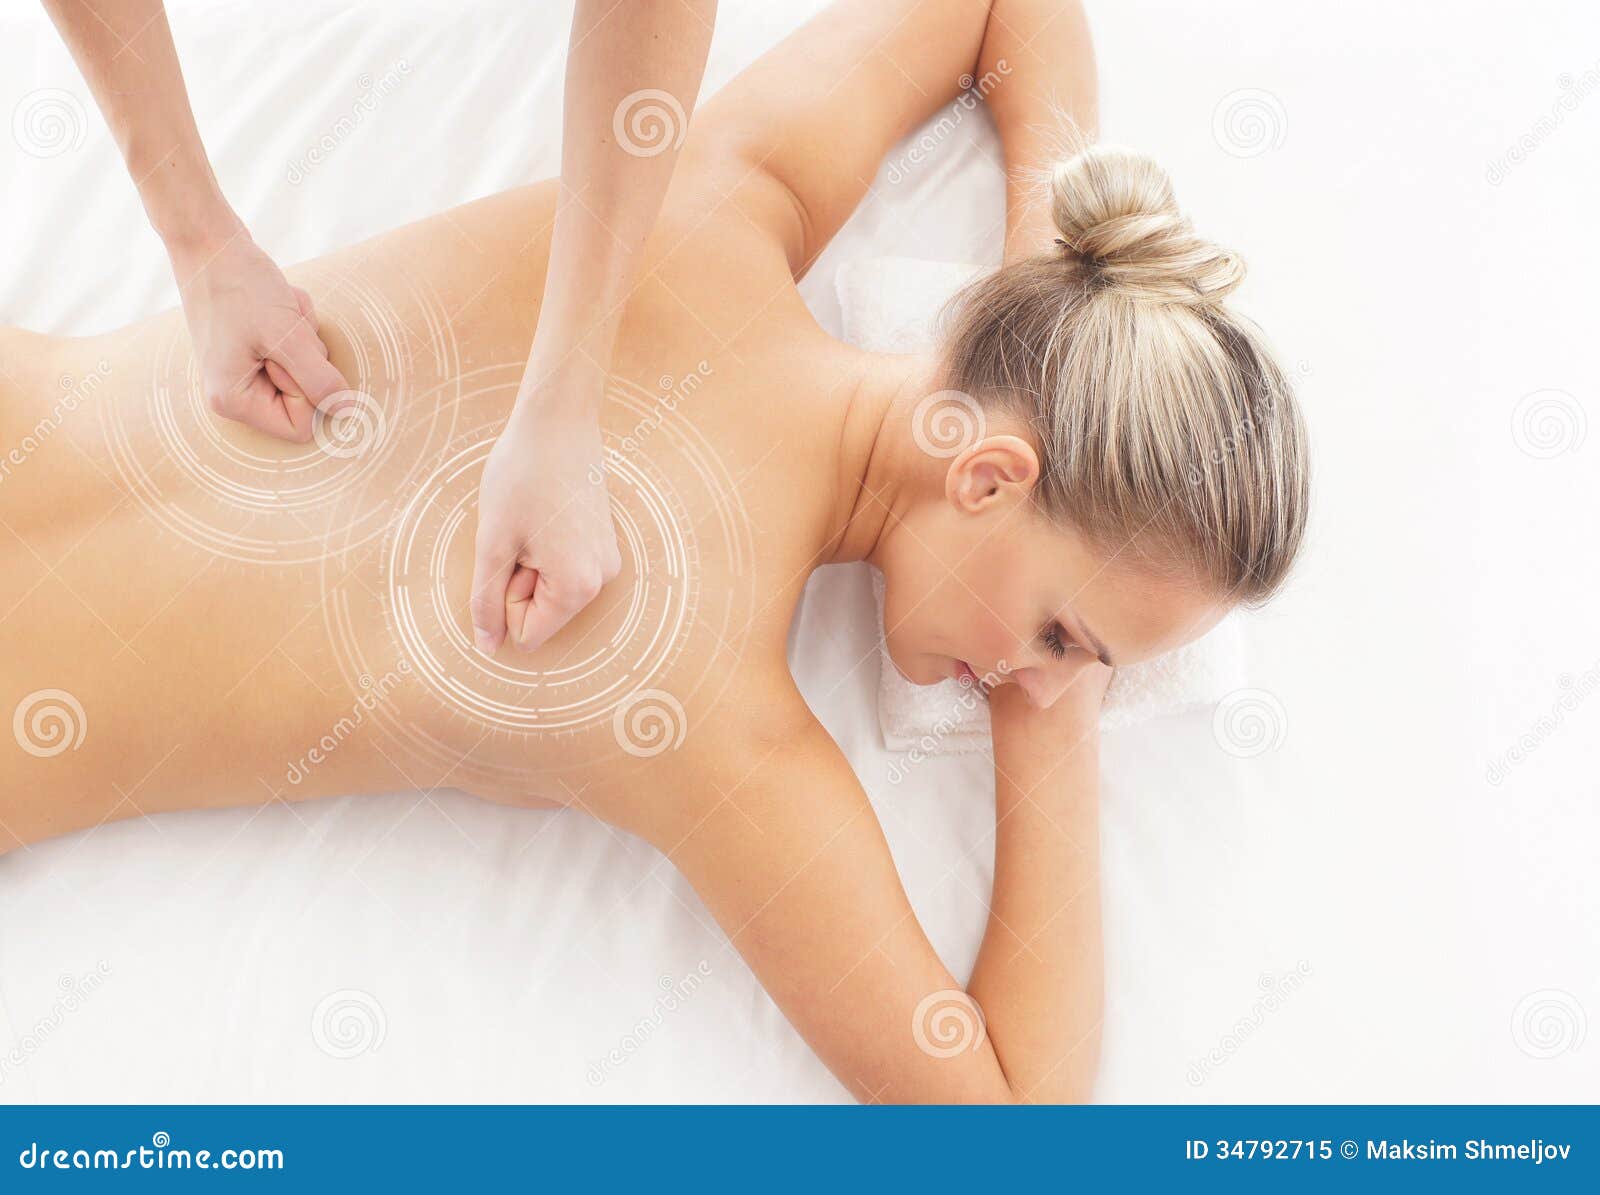 Back massage naked